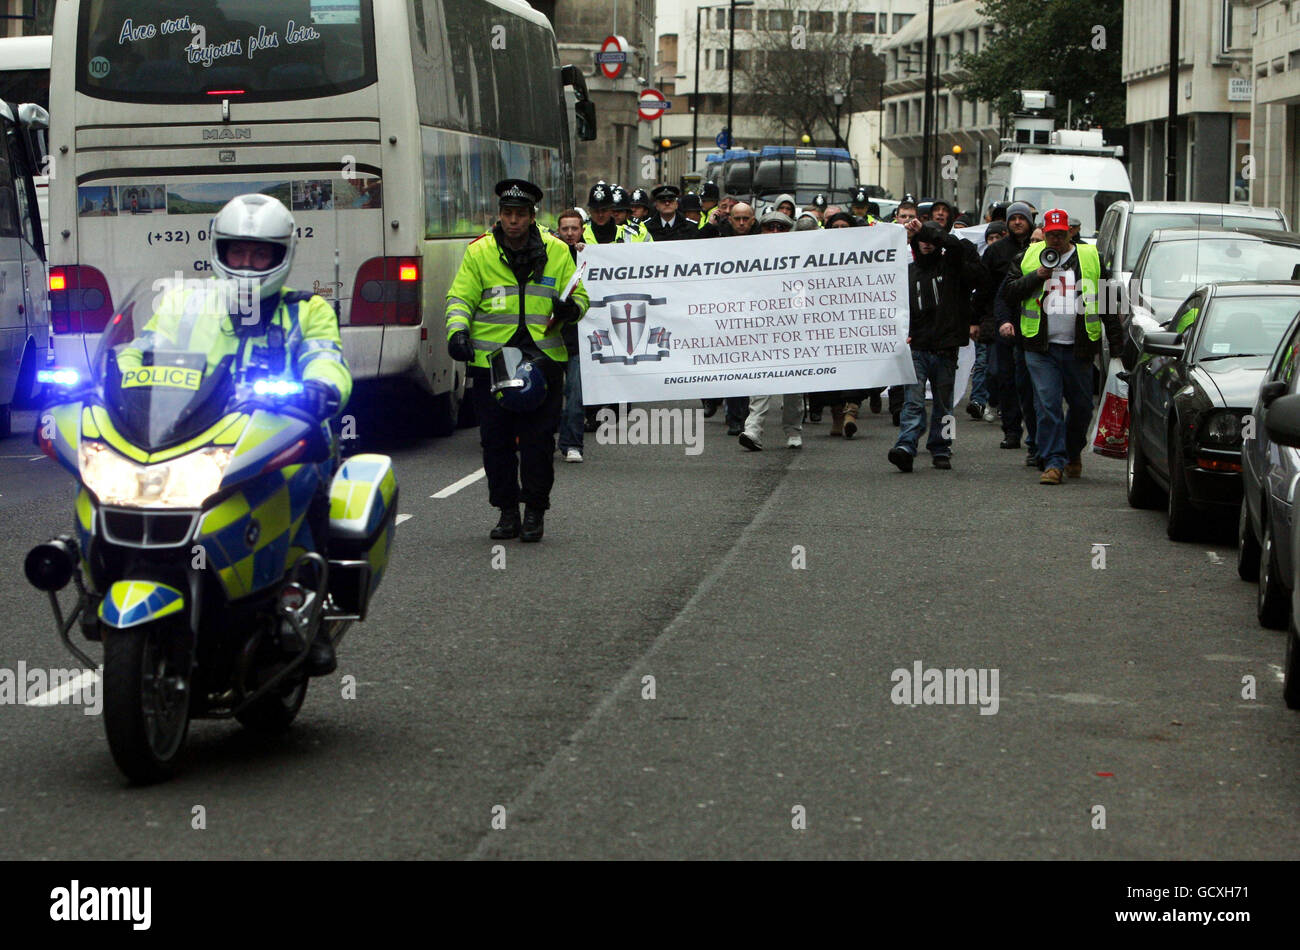 Manifestantes durante la Alianza Nacionalista Inglesa protestan contra la Sharia Law en el centro de Londres. Foto de stock